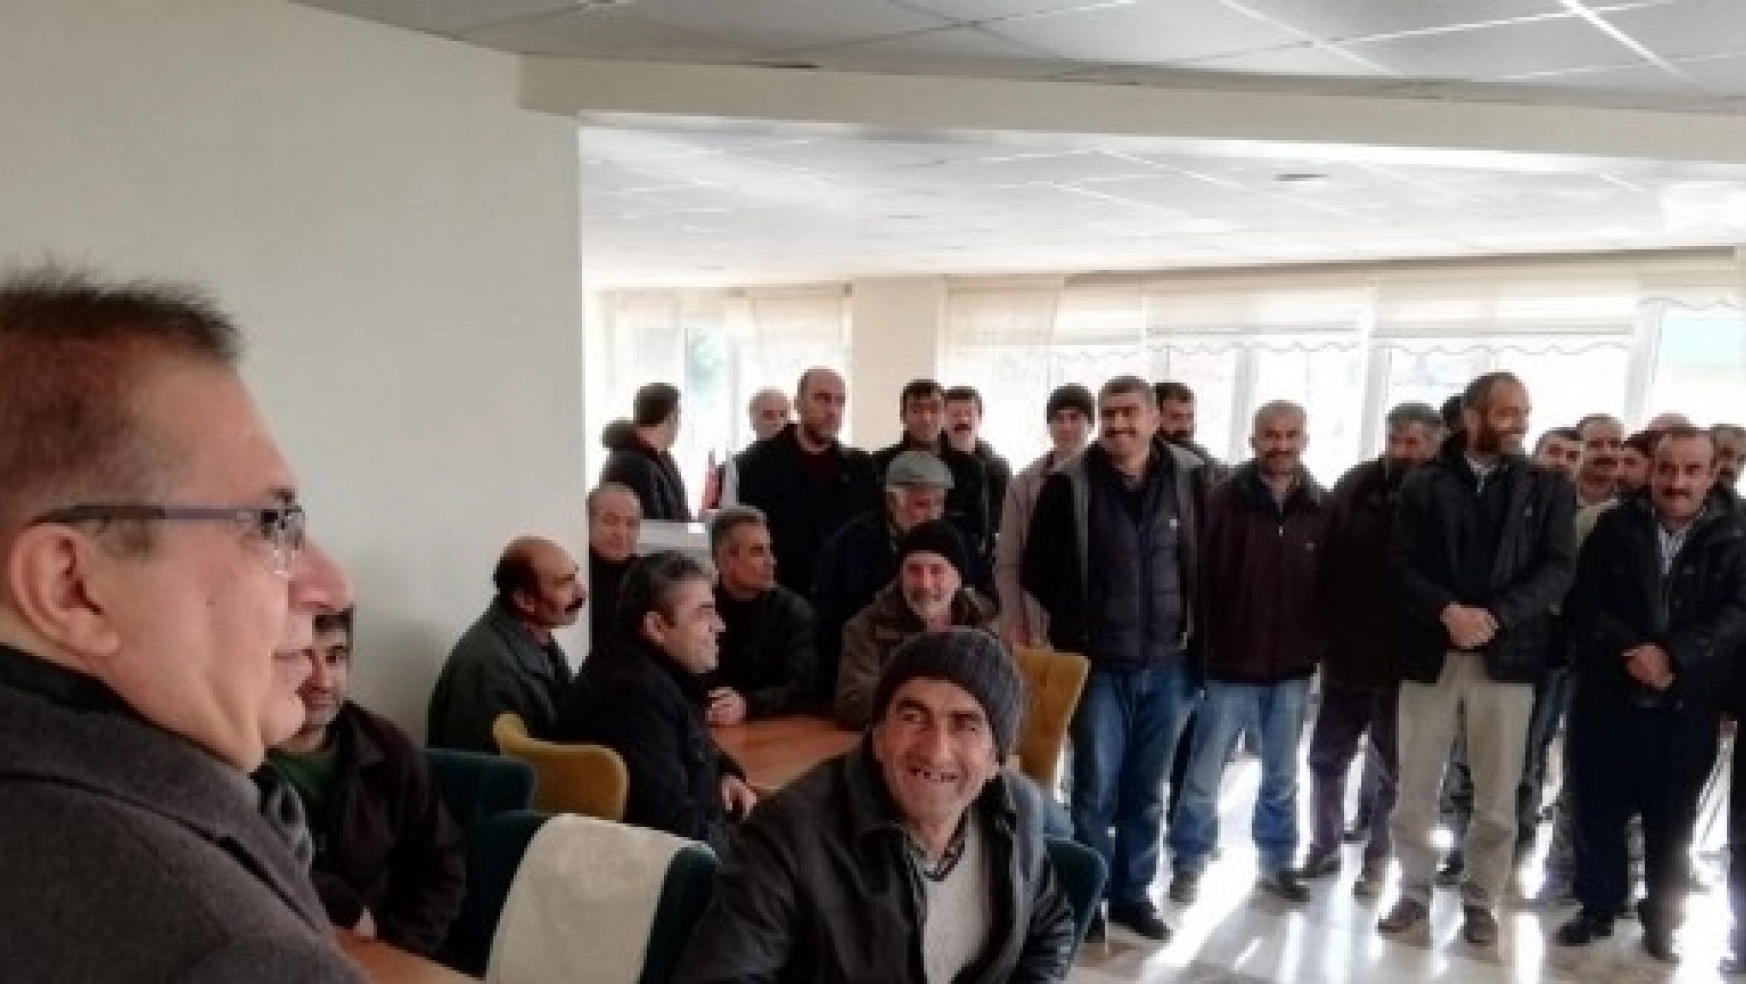 Akçadağ Belediyesi, TYÇP Kapsamında 40 İşçi Alımı Yaptı